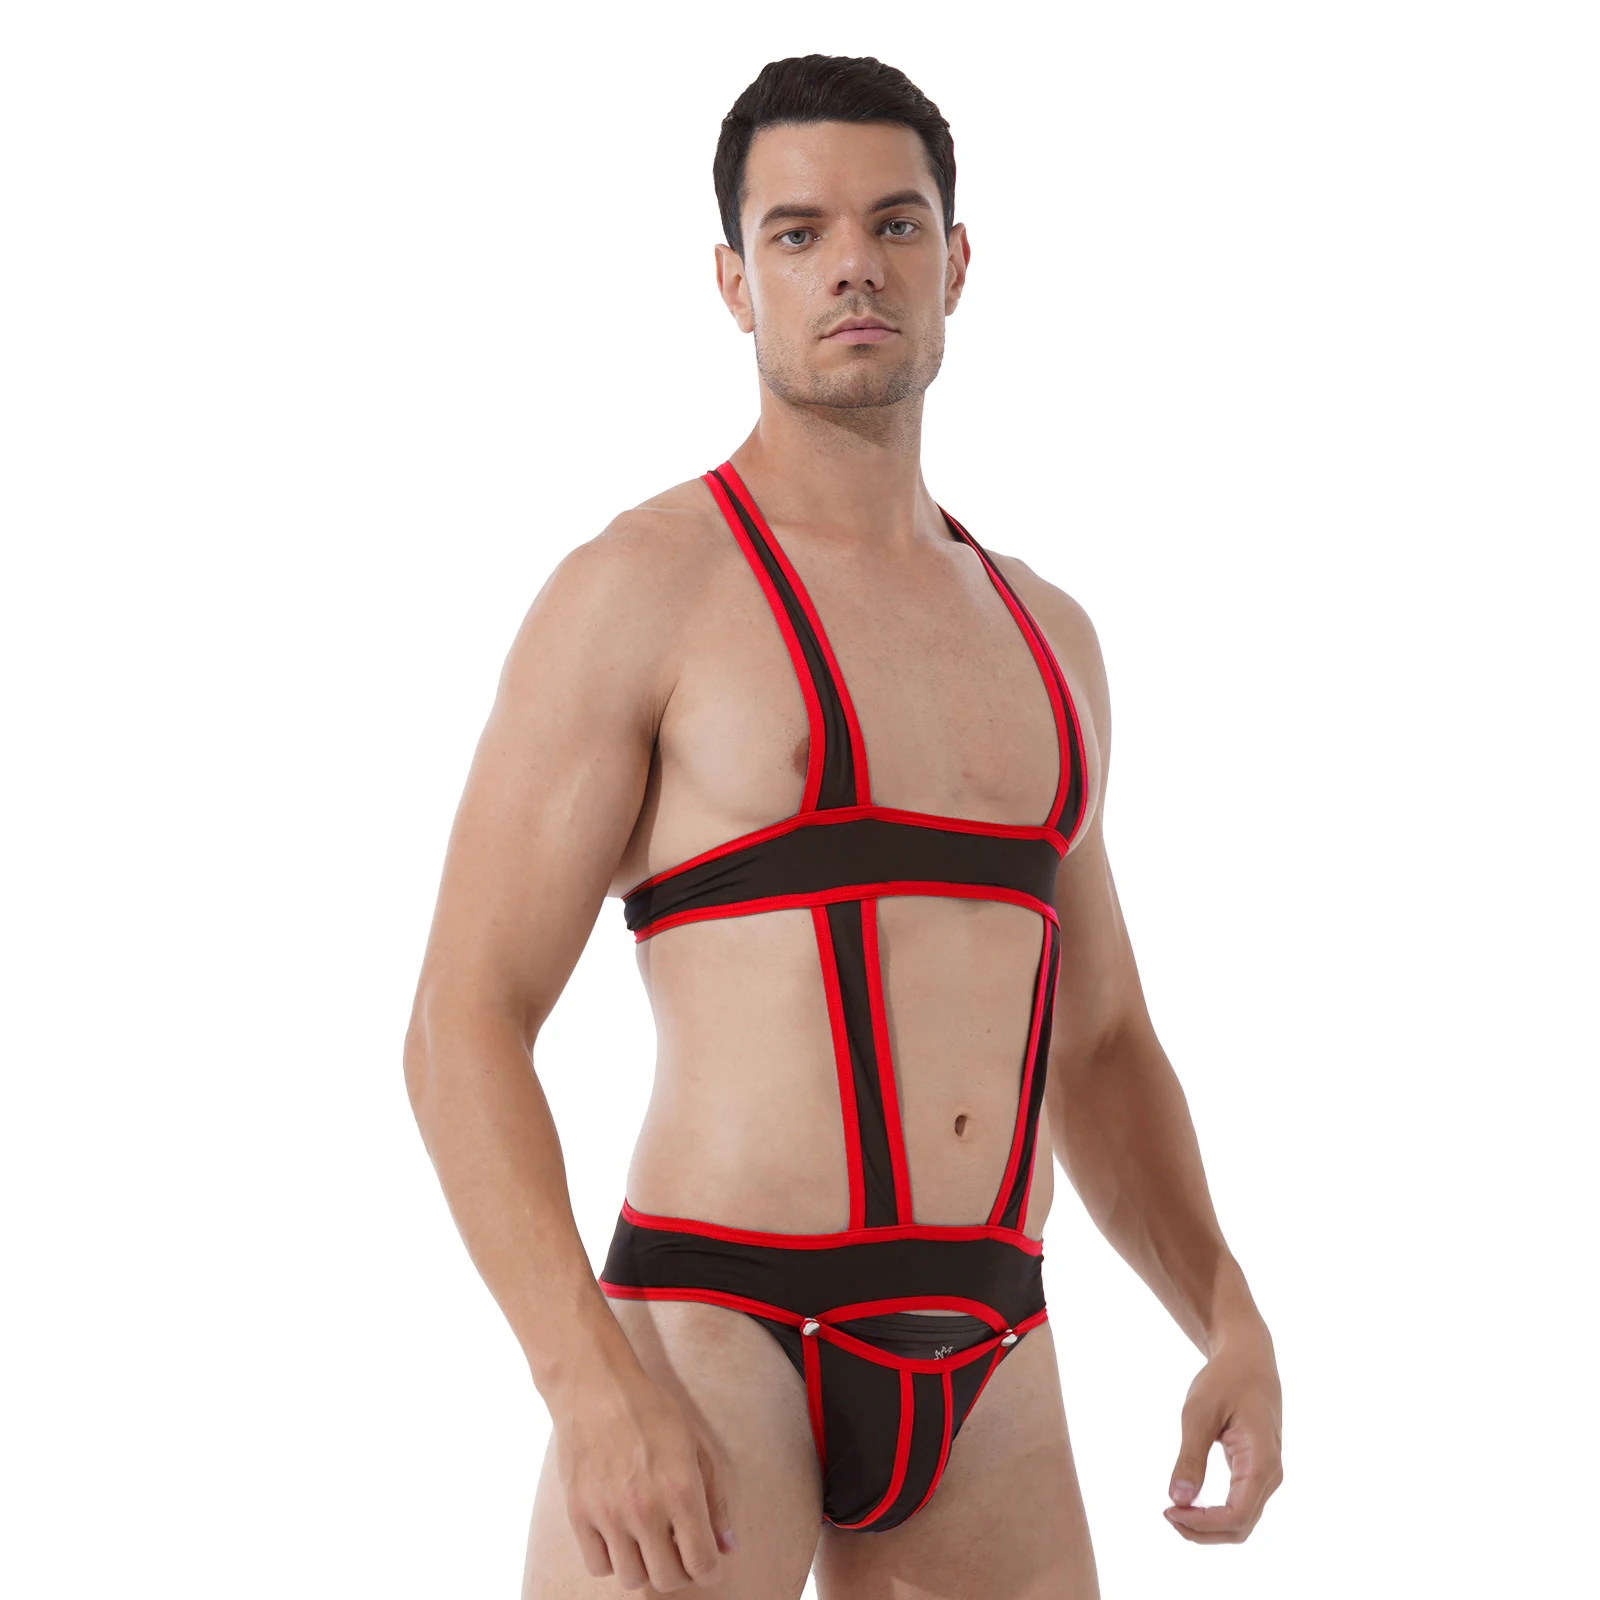 

Mens Jockstrap Sexy Hollow Out Bodysuit Harness Underwear Wrestling Singlet Buckle Pouch Leotard Jumpsuits Suspender Teddies